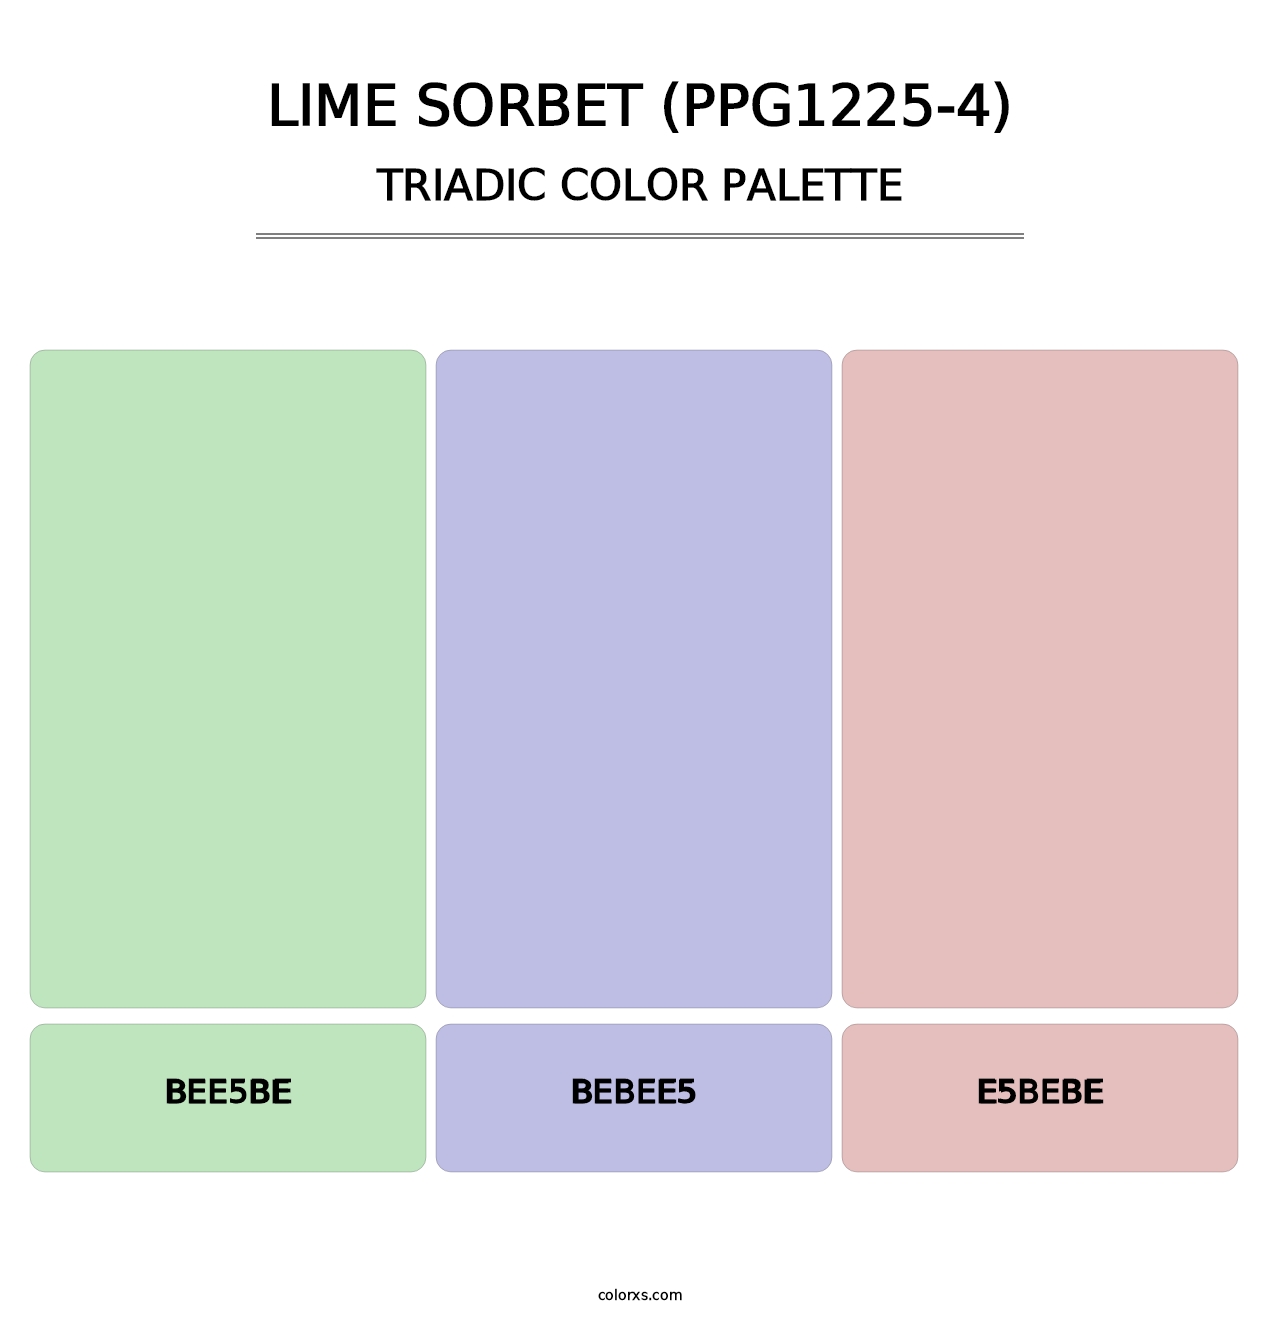 Lime Sorbet (PPG1225-4) - Triadic Color Palette